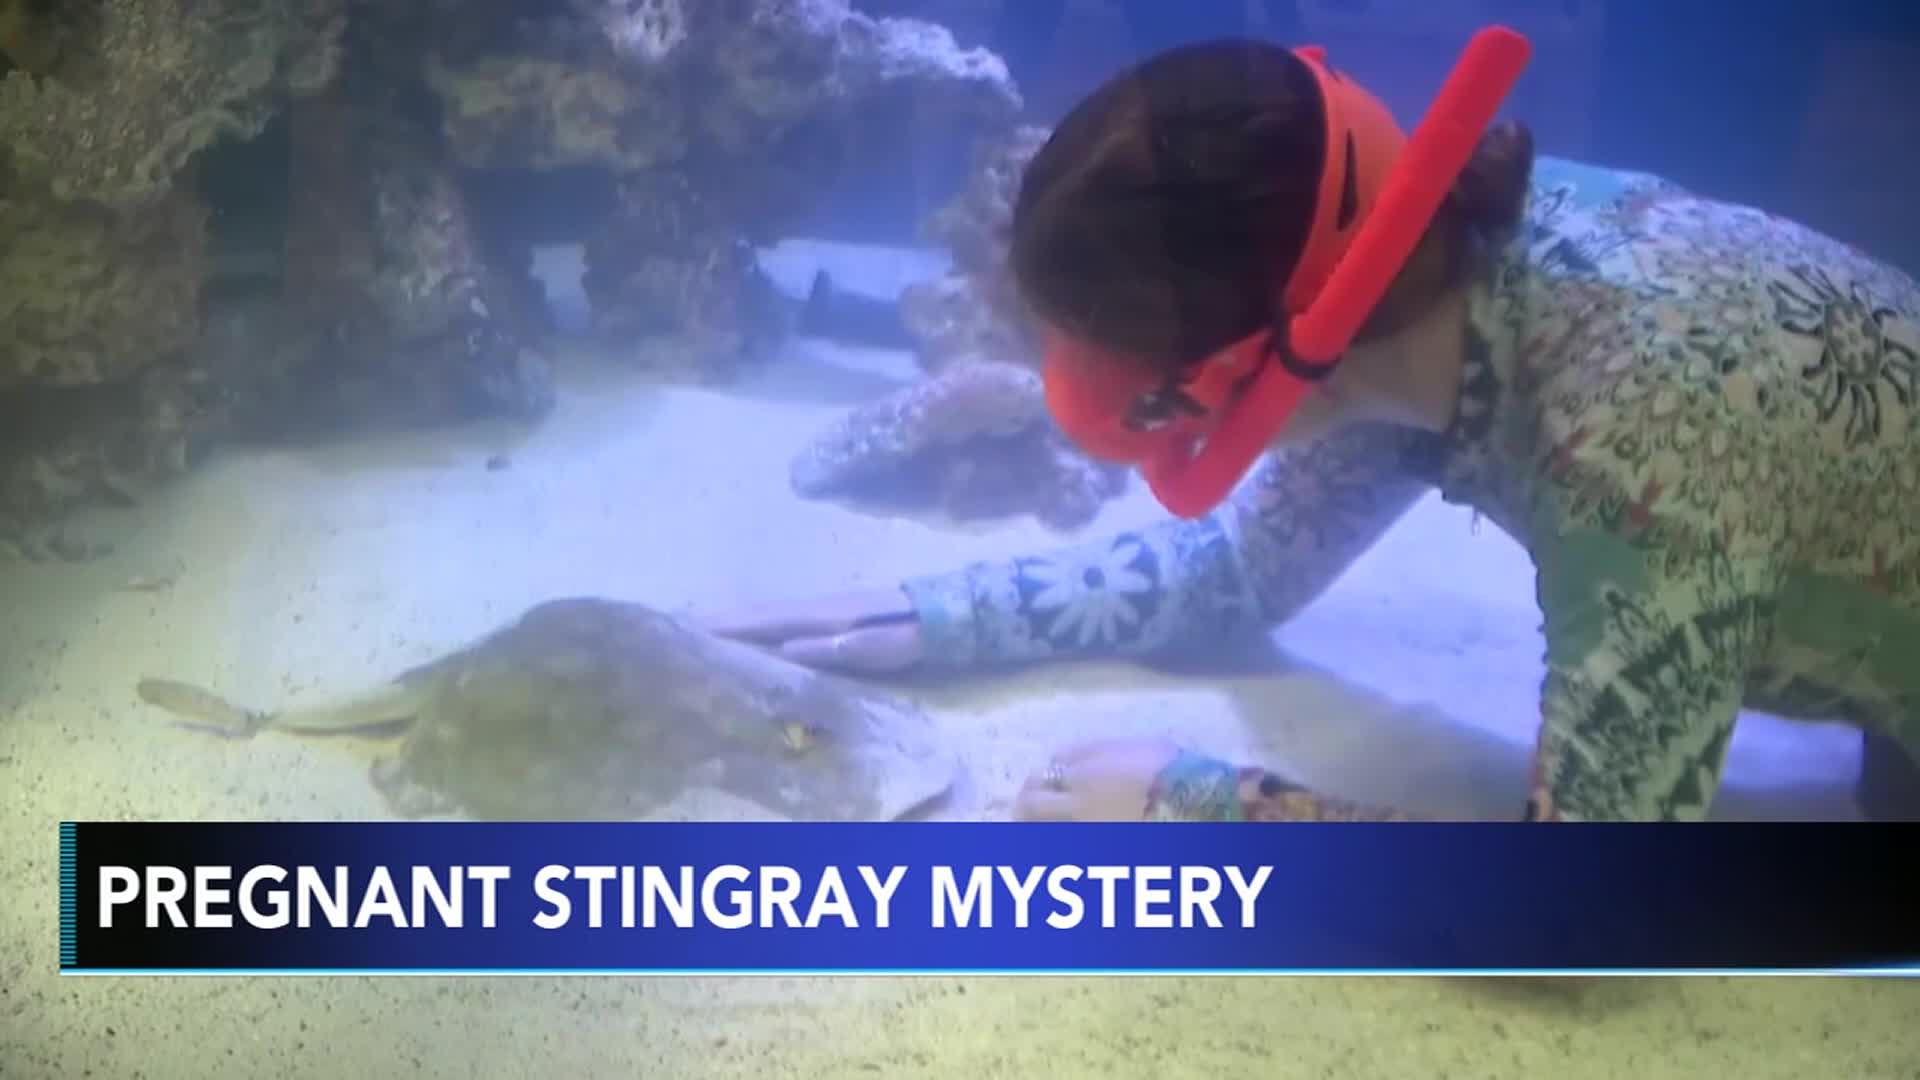 Stingray with no male companion is pregnant in aquarium